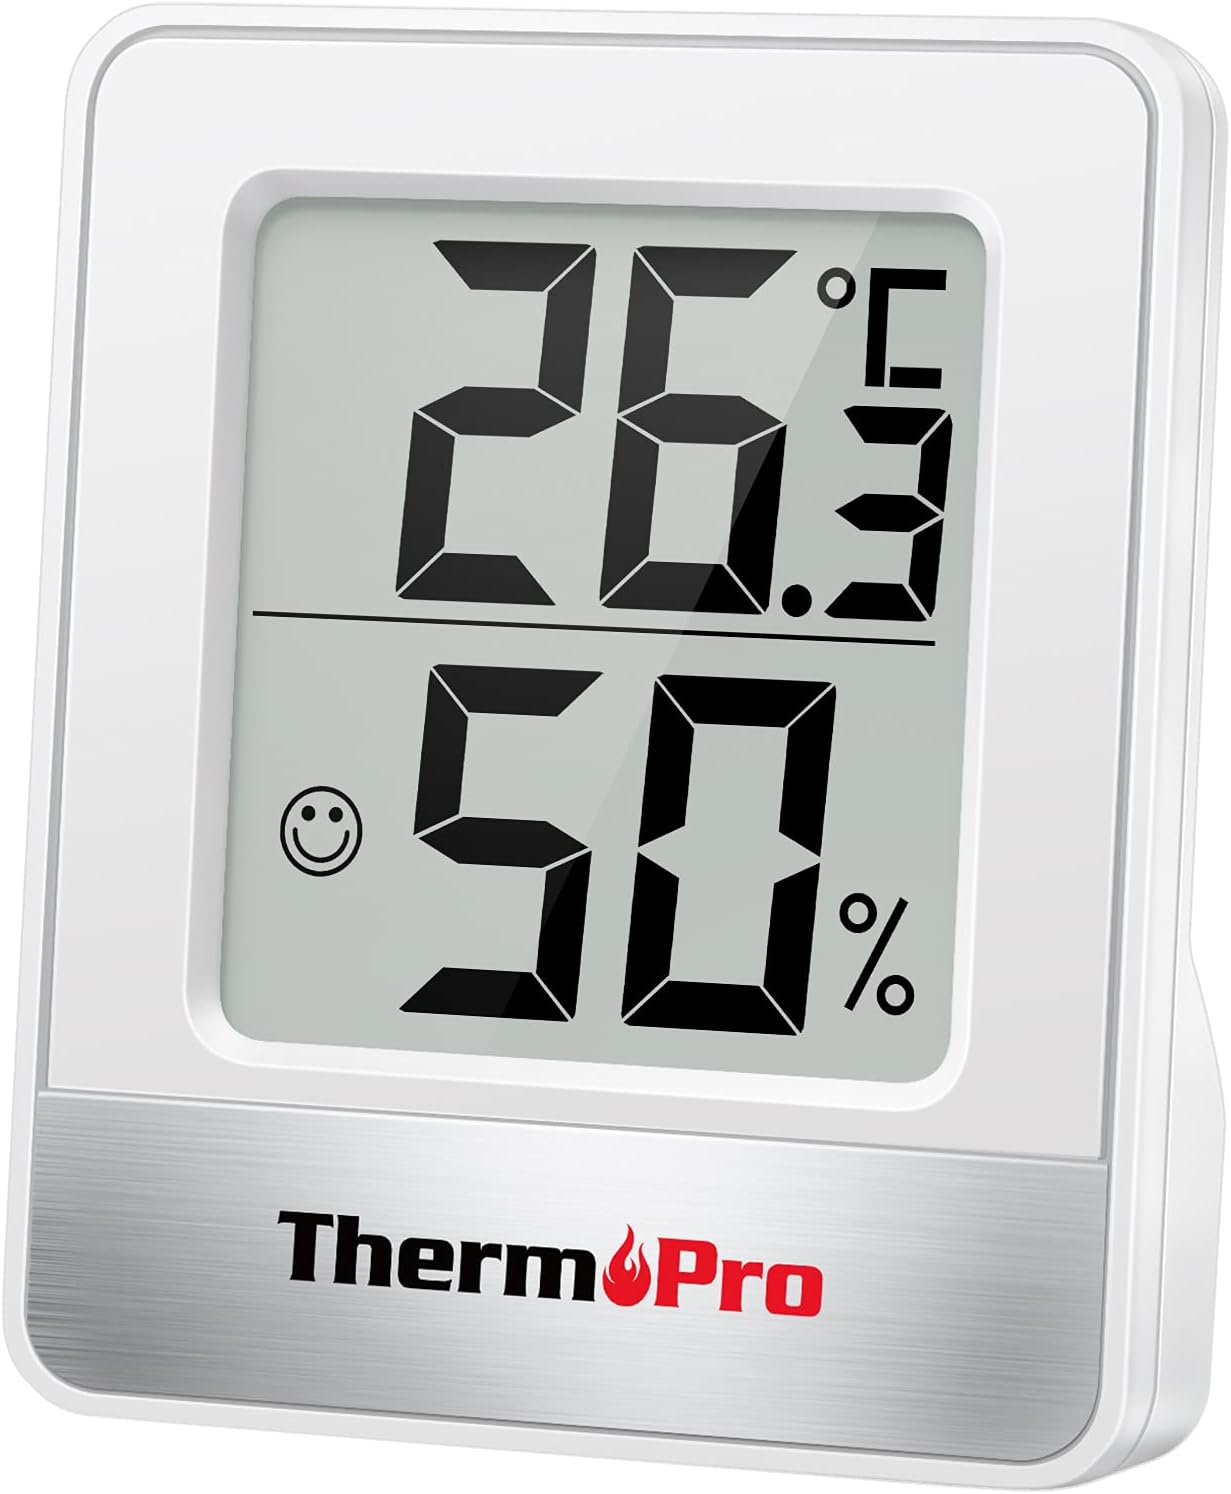 ThermoPro TP49 digitales Mini Thermo-Hygrometer Thermometer Hygrometer innen Temperatur und Luftfeuchtigkeitmessgerät mit Smiley-Indikator für Gewächshaus, Wohnzimmer, weiß